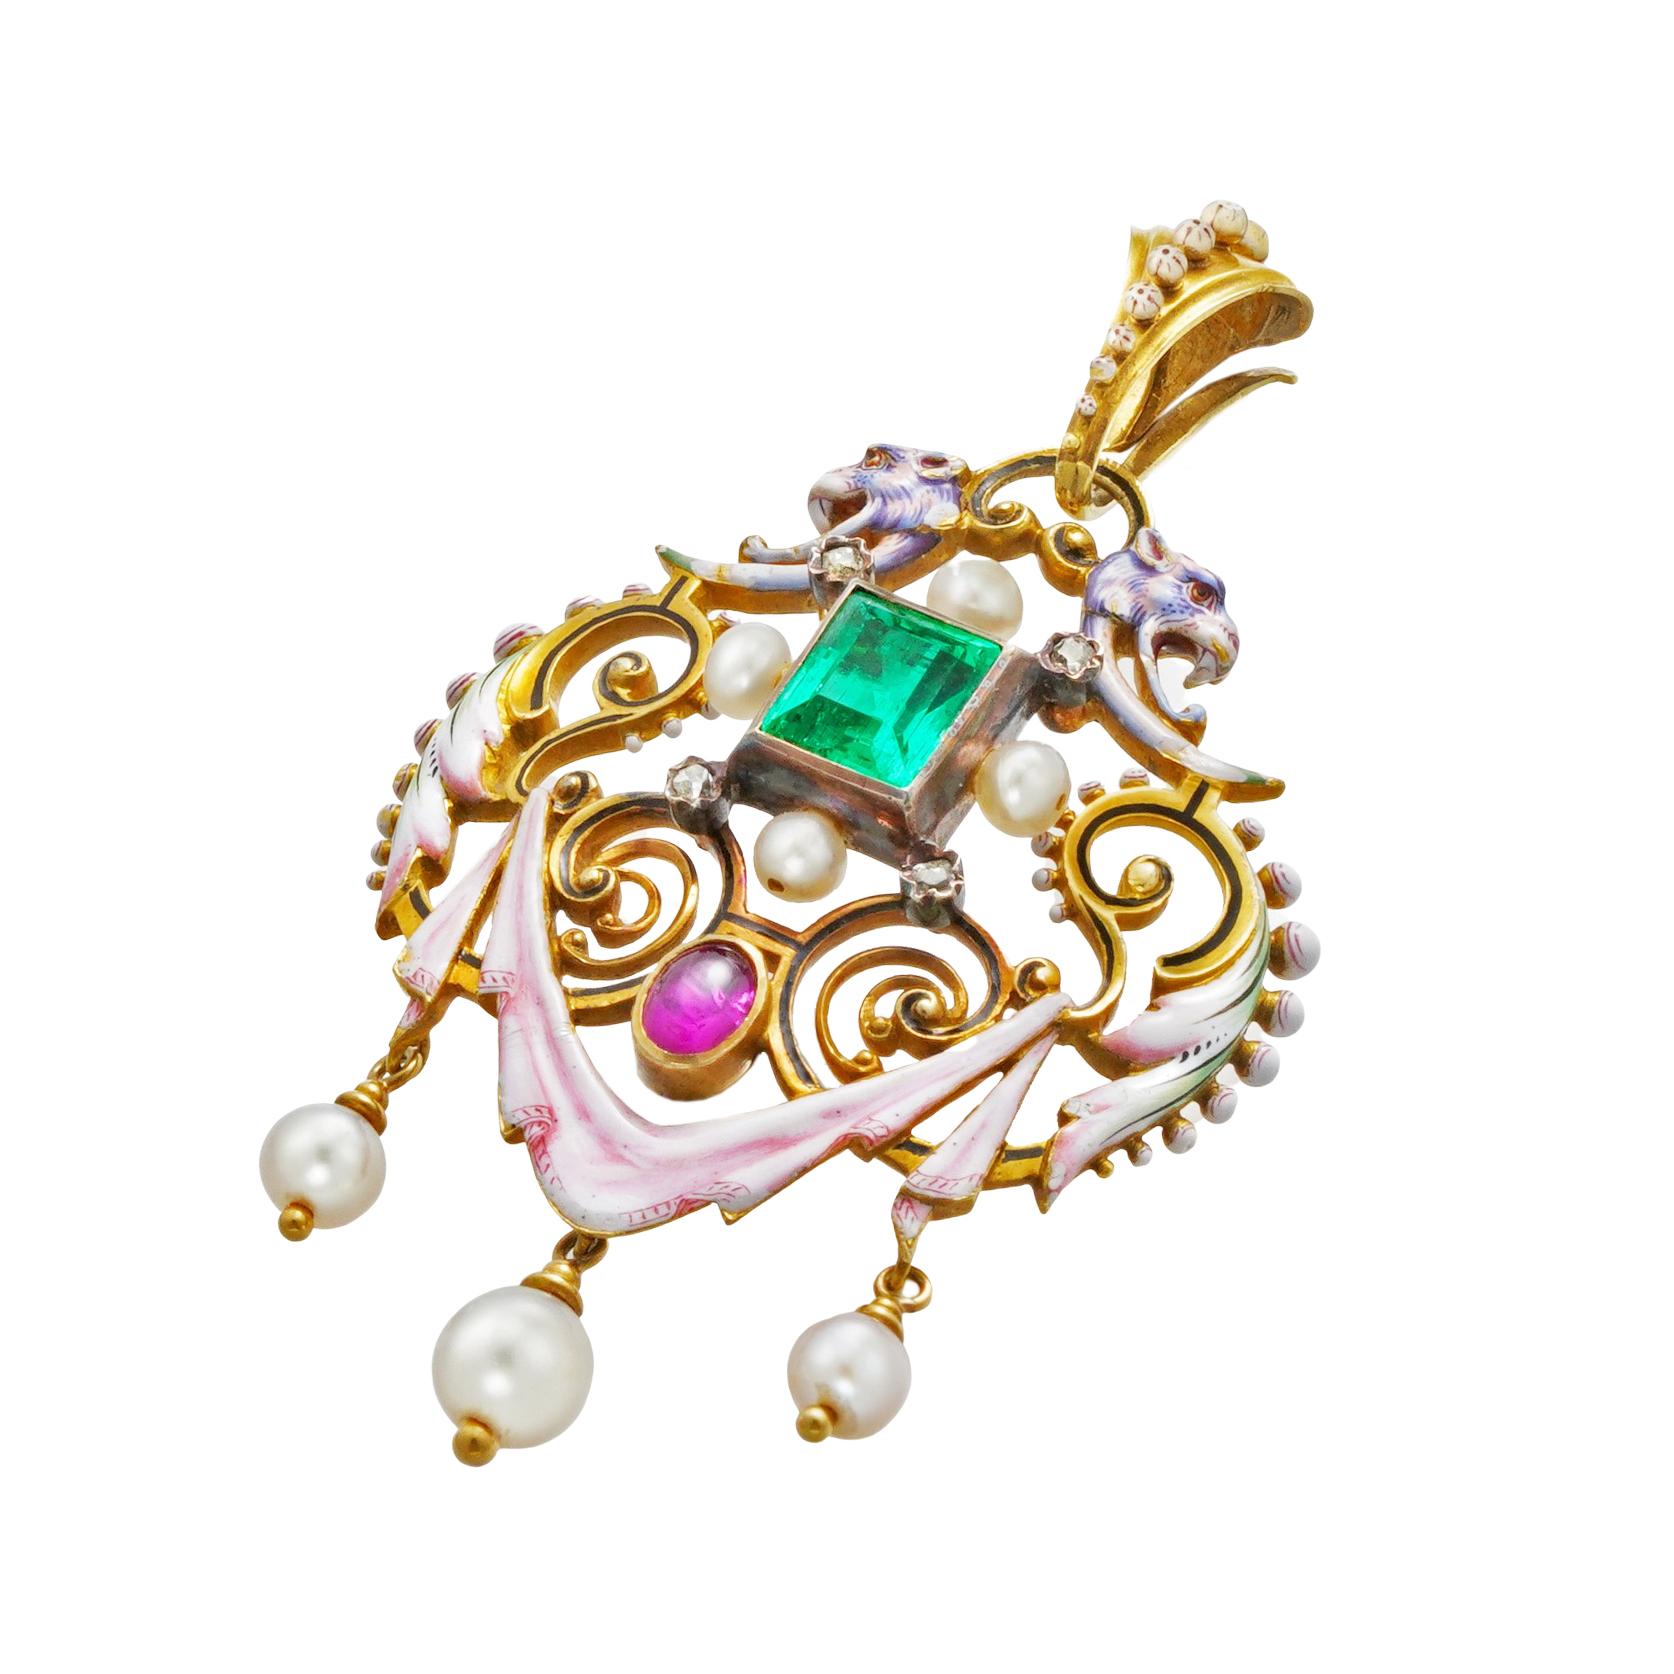 Ein Smaragd-, Rubin-, Perlen- und emaillierter Goldanhänger im Renaissance-Stil, mit einem rechteckigen Smaragd von schätzungsweise 1,5 Karat in der Mitte, flankiert von einem diamantbesetzten Collier an jeder Ecke und vier Perlen, die alle in einer